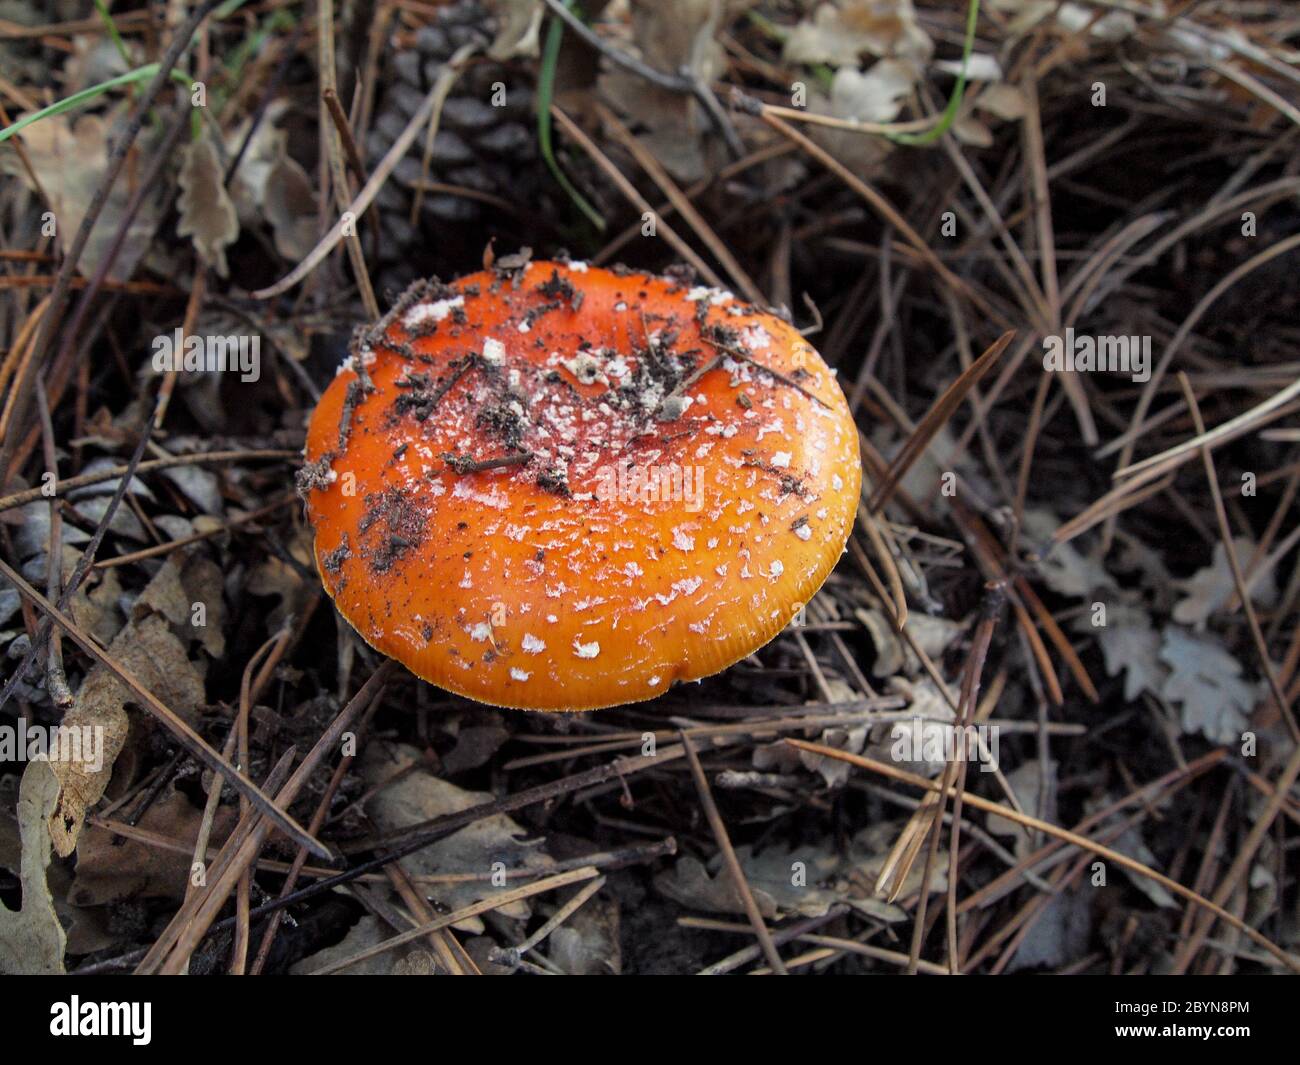 Different types of mushrooms found in the forests of the Serranía de Cuenca. Amanita muscaria,Boletus edulis,russulas,marasmius orades. Stock Photo